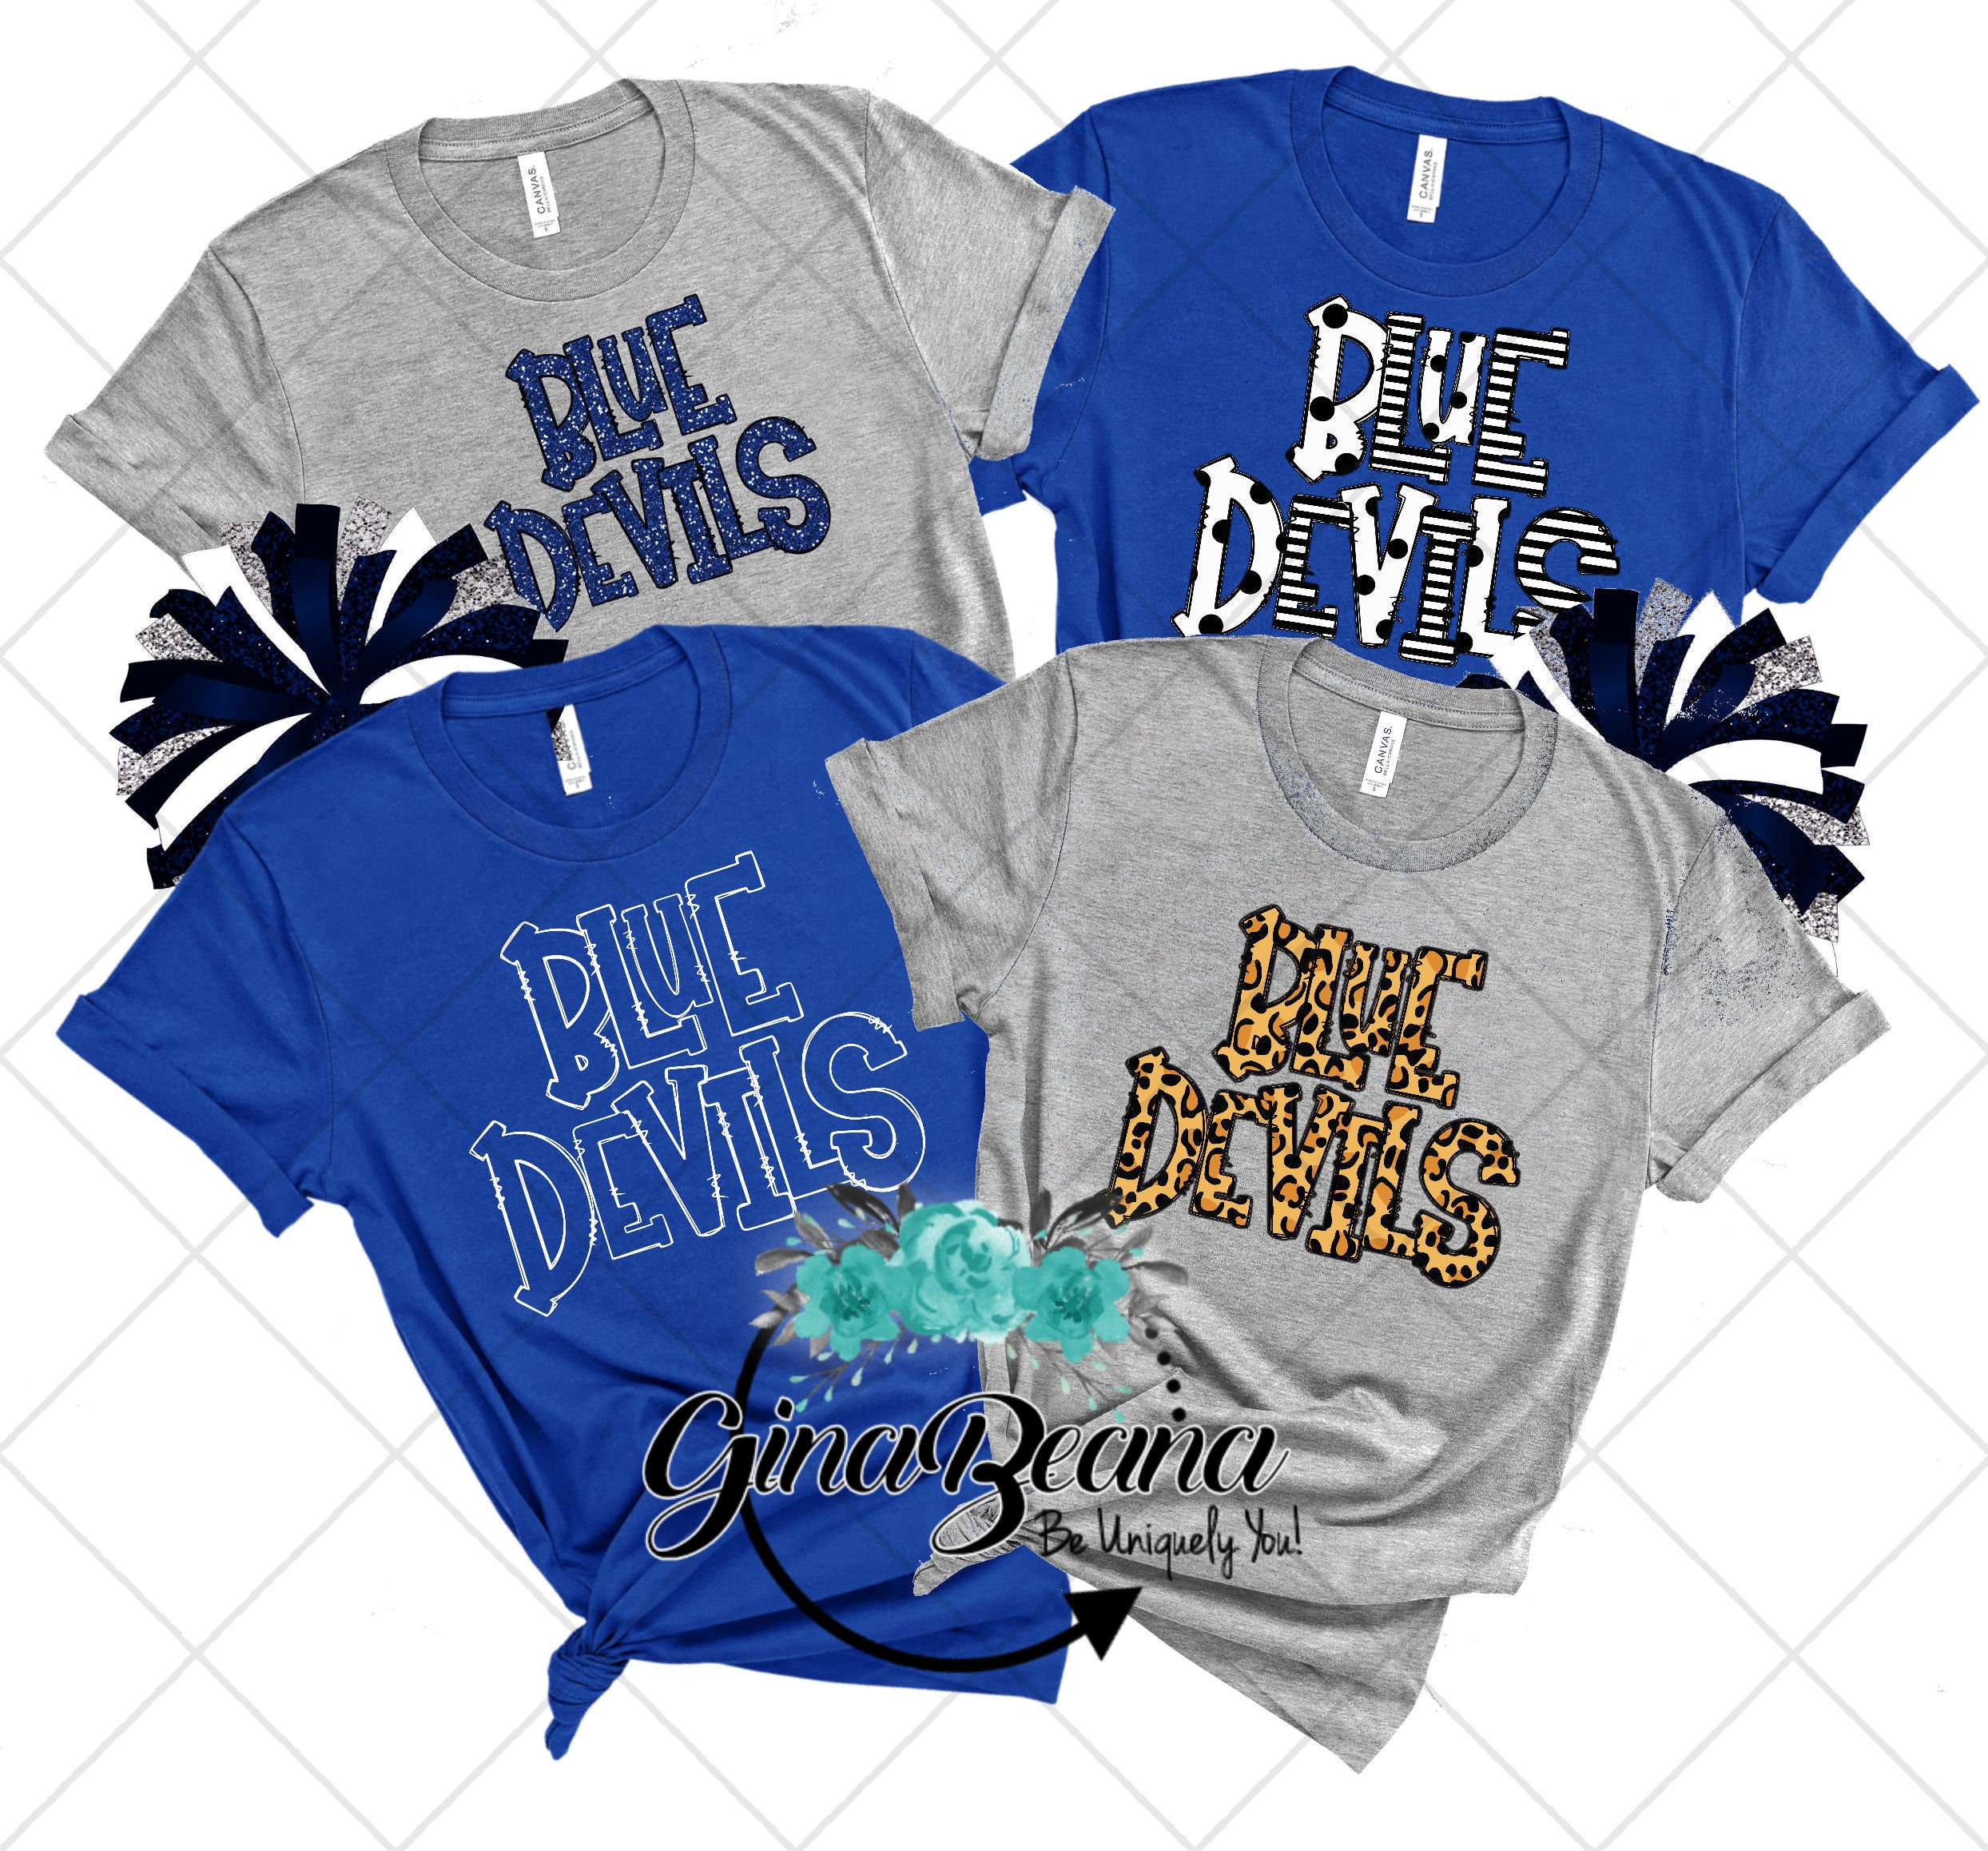 Available] Buy New Custom Duke Blue Devils Jersey Royal